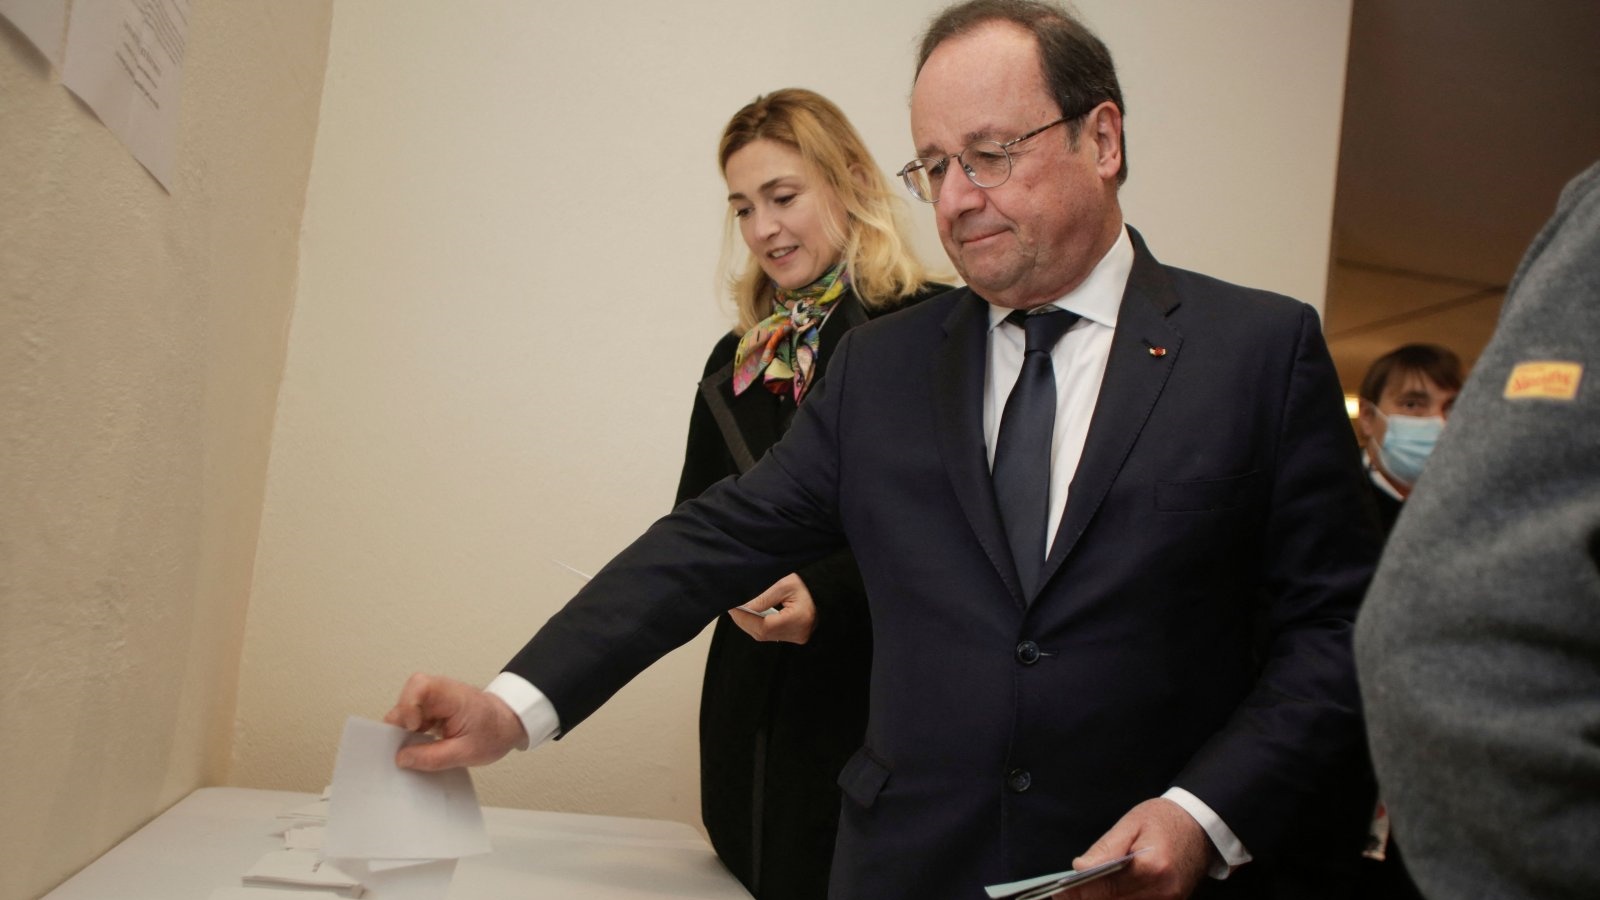 الرئيس الفرنسي الأسبق فرانسوا هولاند (إلى اليمين) وزوجته الممثلة الفرنسية جولي جاييه (إلى اليسار) عند وصولهما للتصويت خلال الجولة الأولى من الانتخابات الرئاسية الفرنسية في مركز اقتراع في تول، فرنسا، في 10 أبريل 2022.